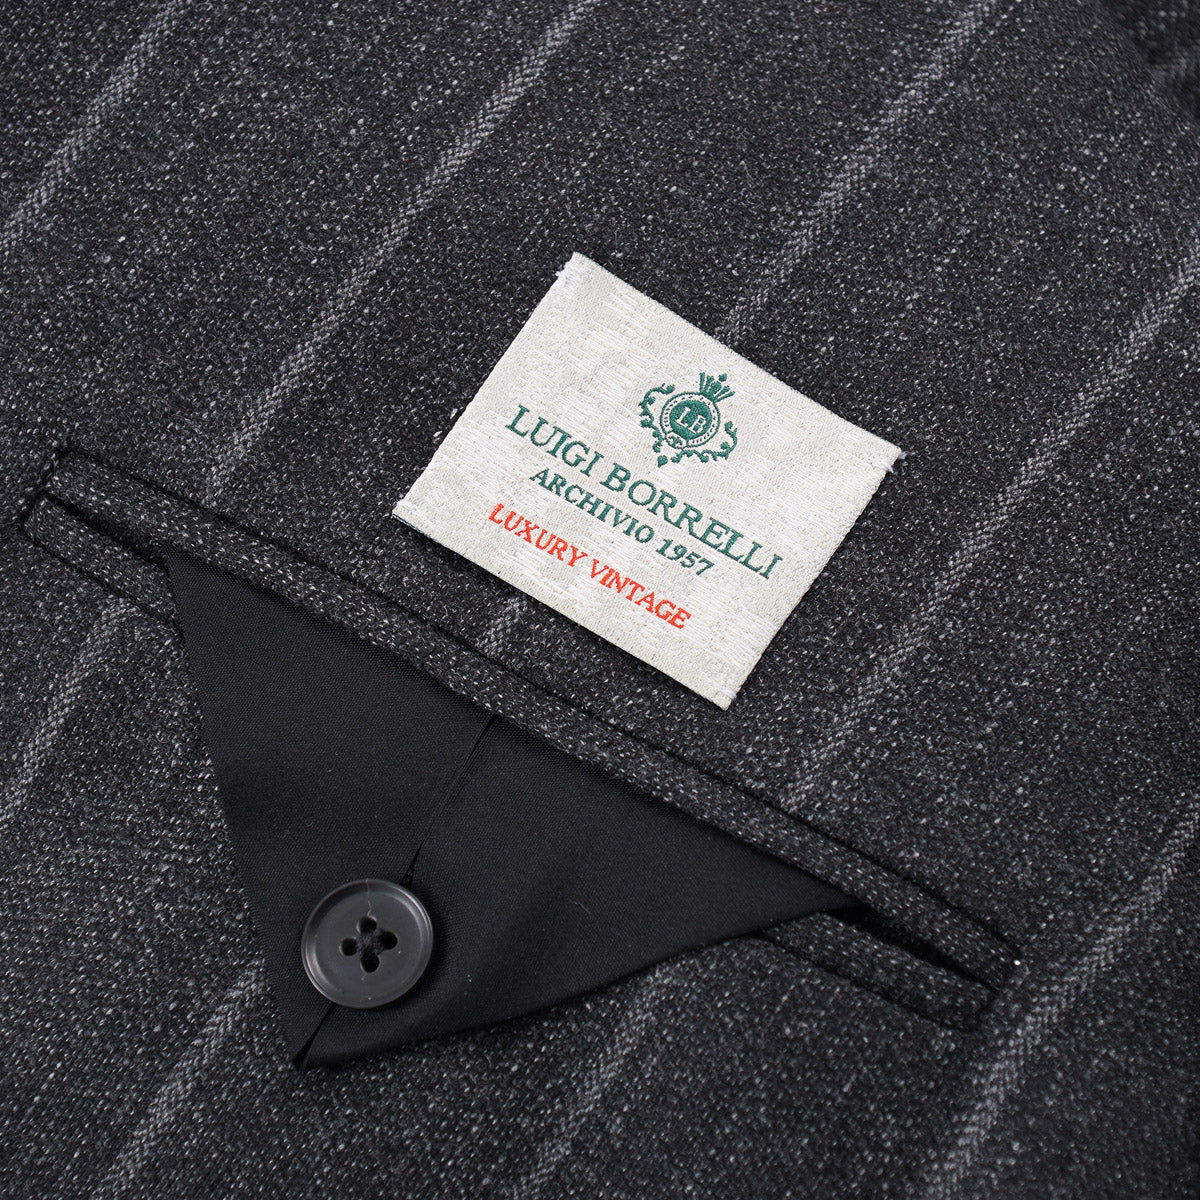 Luigi Borrelli Suit with Drawstring Jogger Pants - Top Shelf Apparel